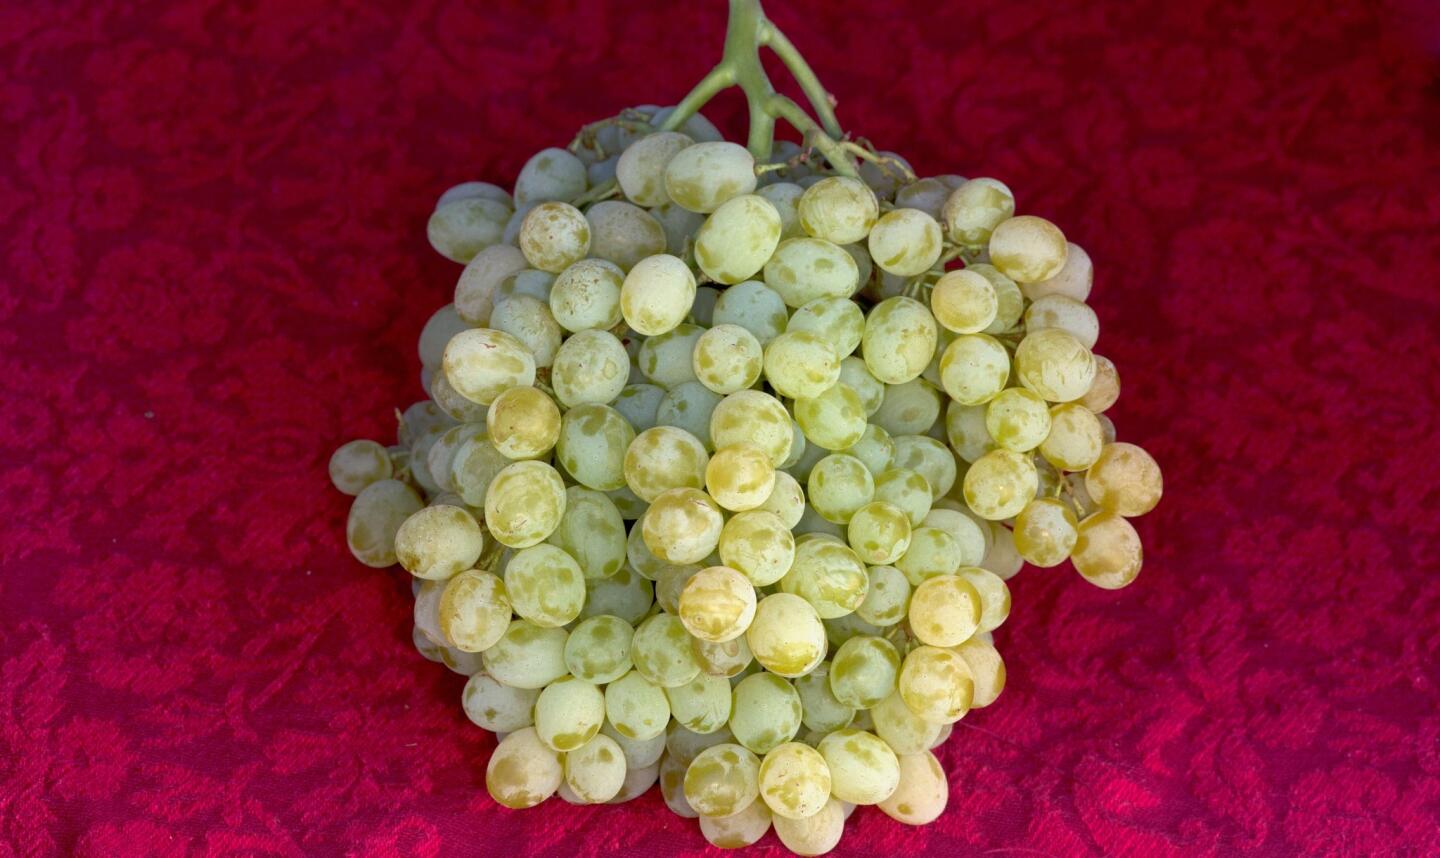 11 recipes for grapes